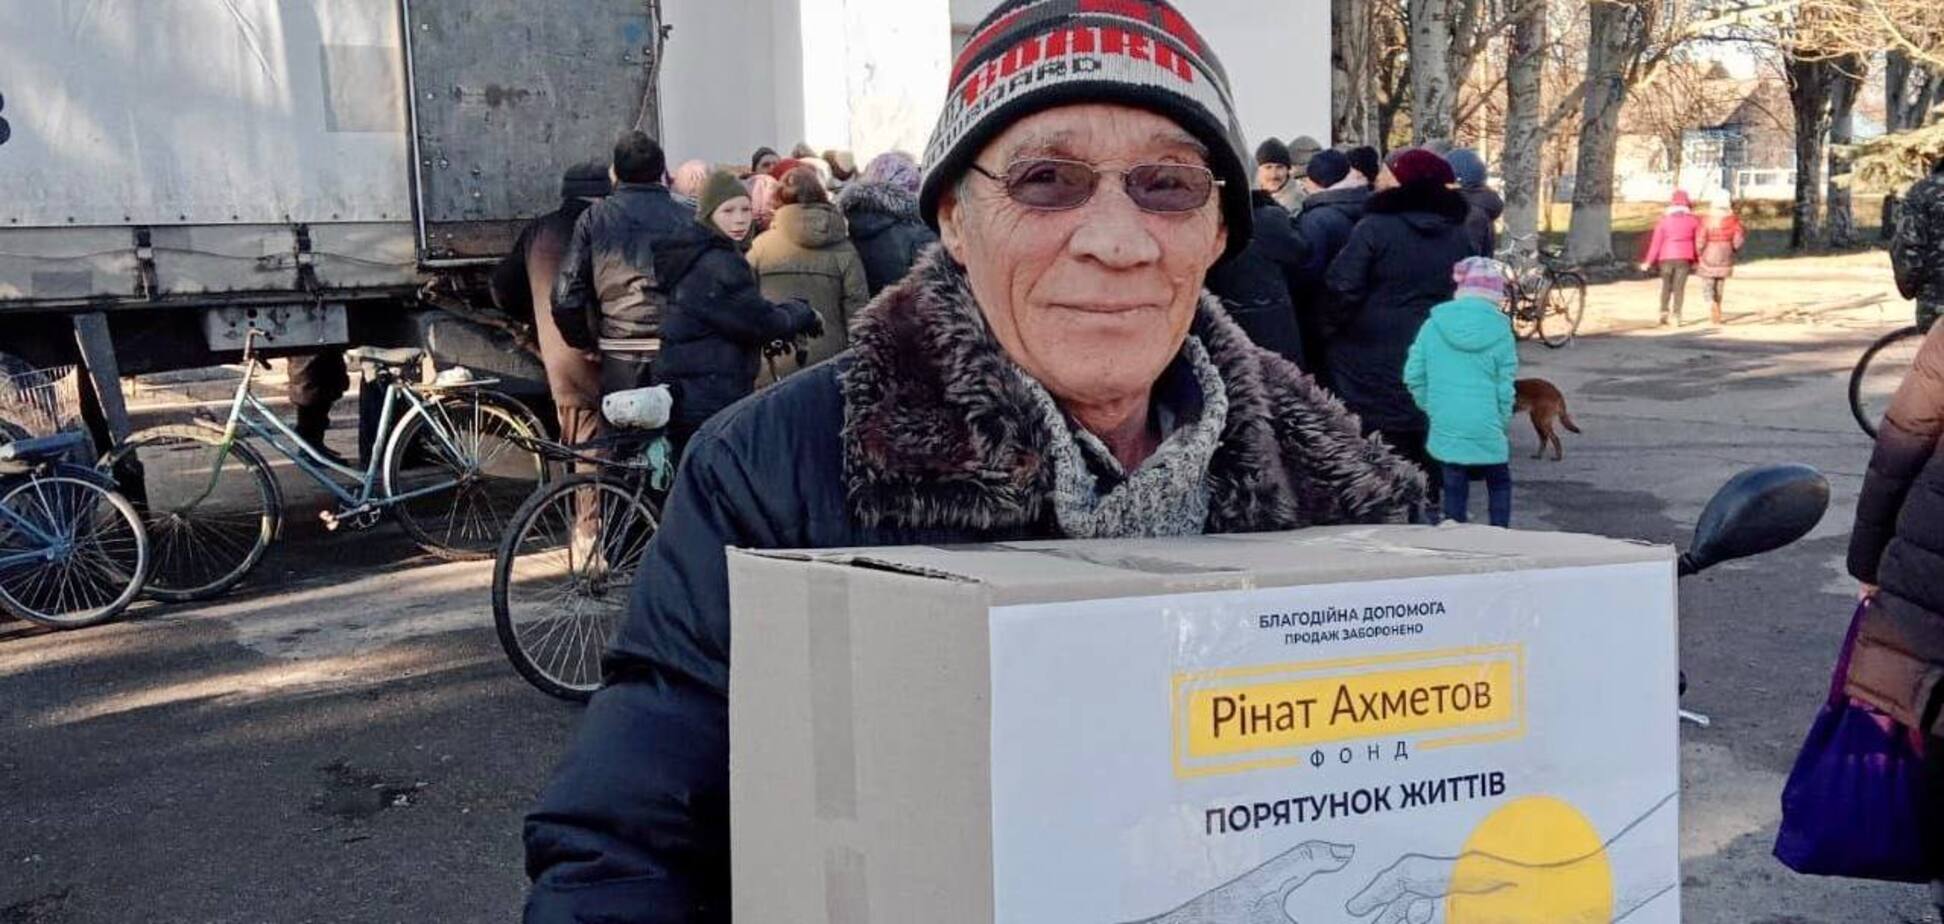 Херсонщина получила от Фонда Ахметова новый продгруз с таблетками для очистки воды